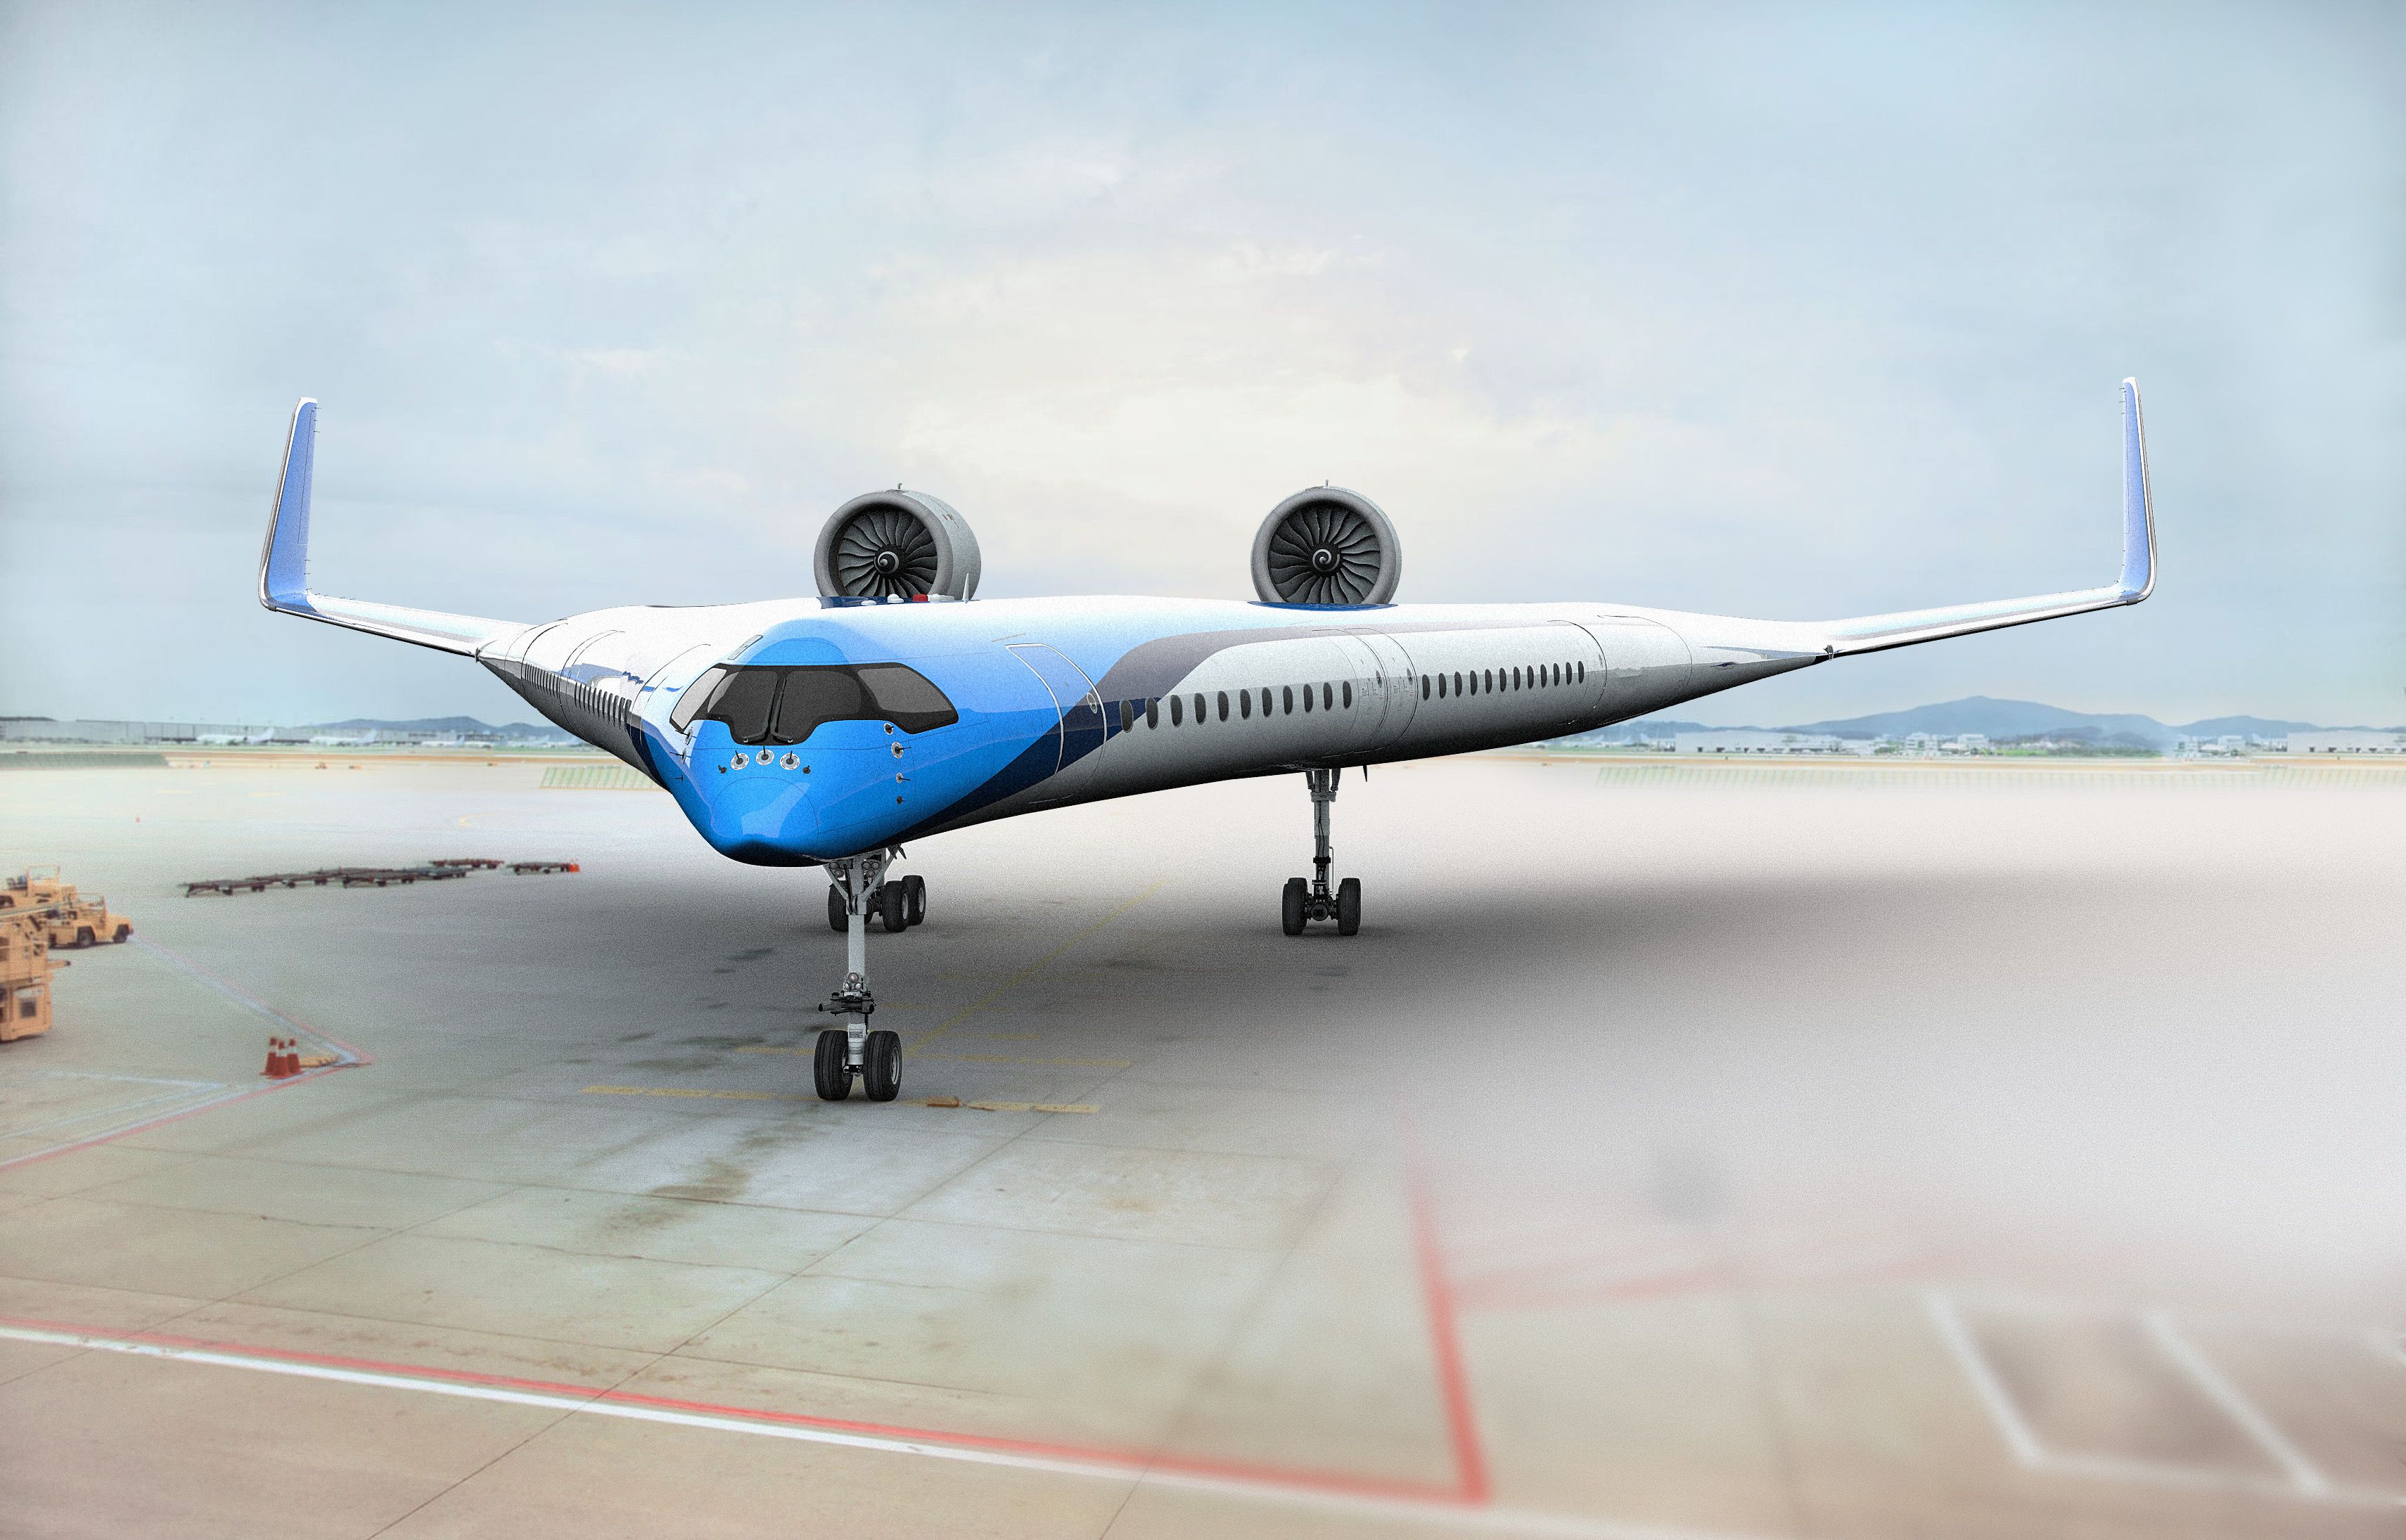 KLM Flying V Design